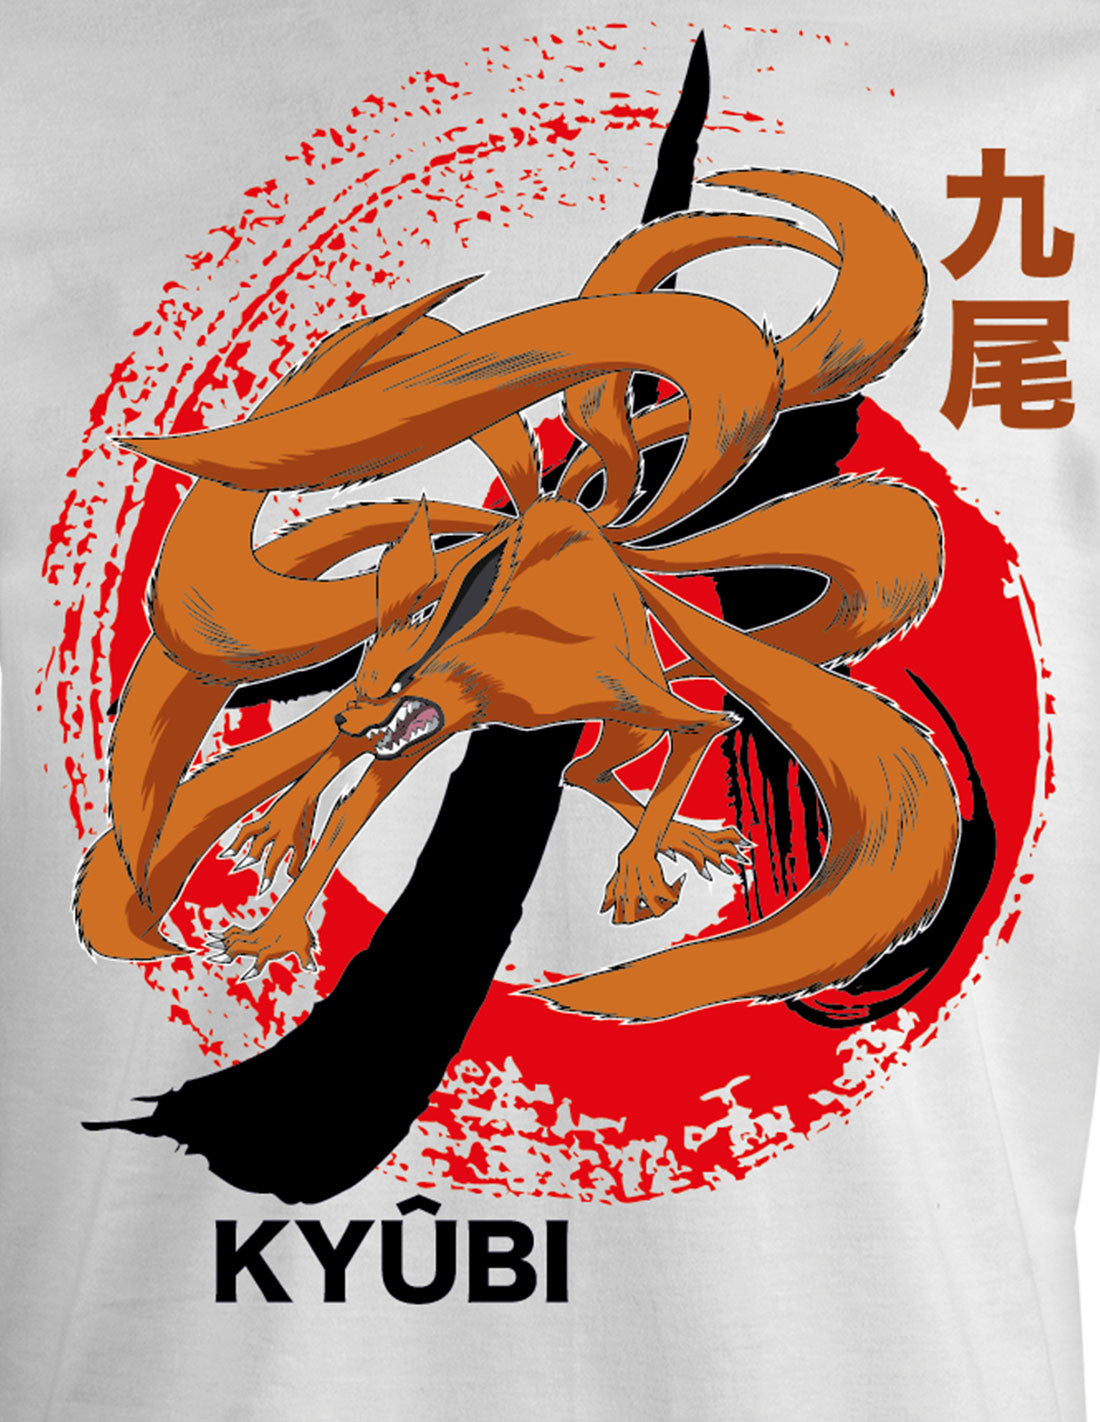 T-shirt Naruto - KYUBI